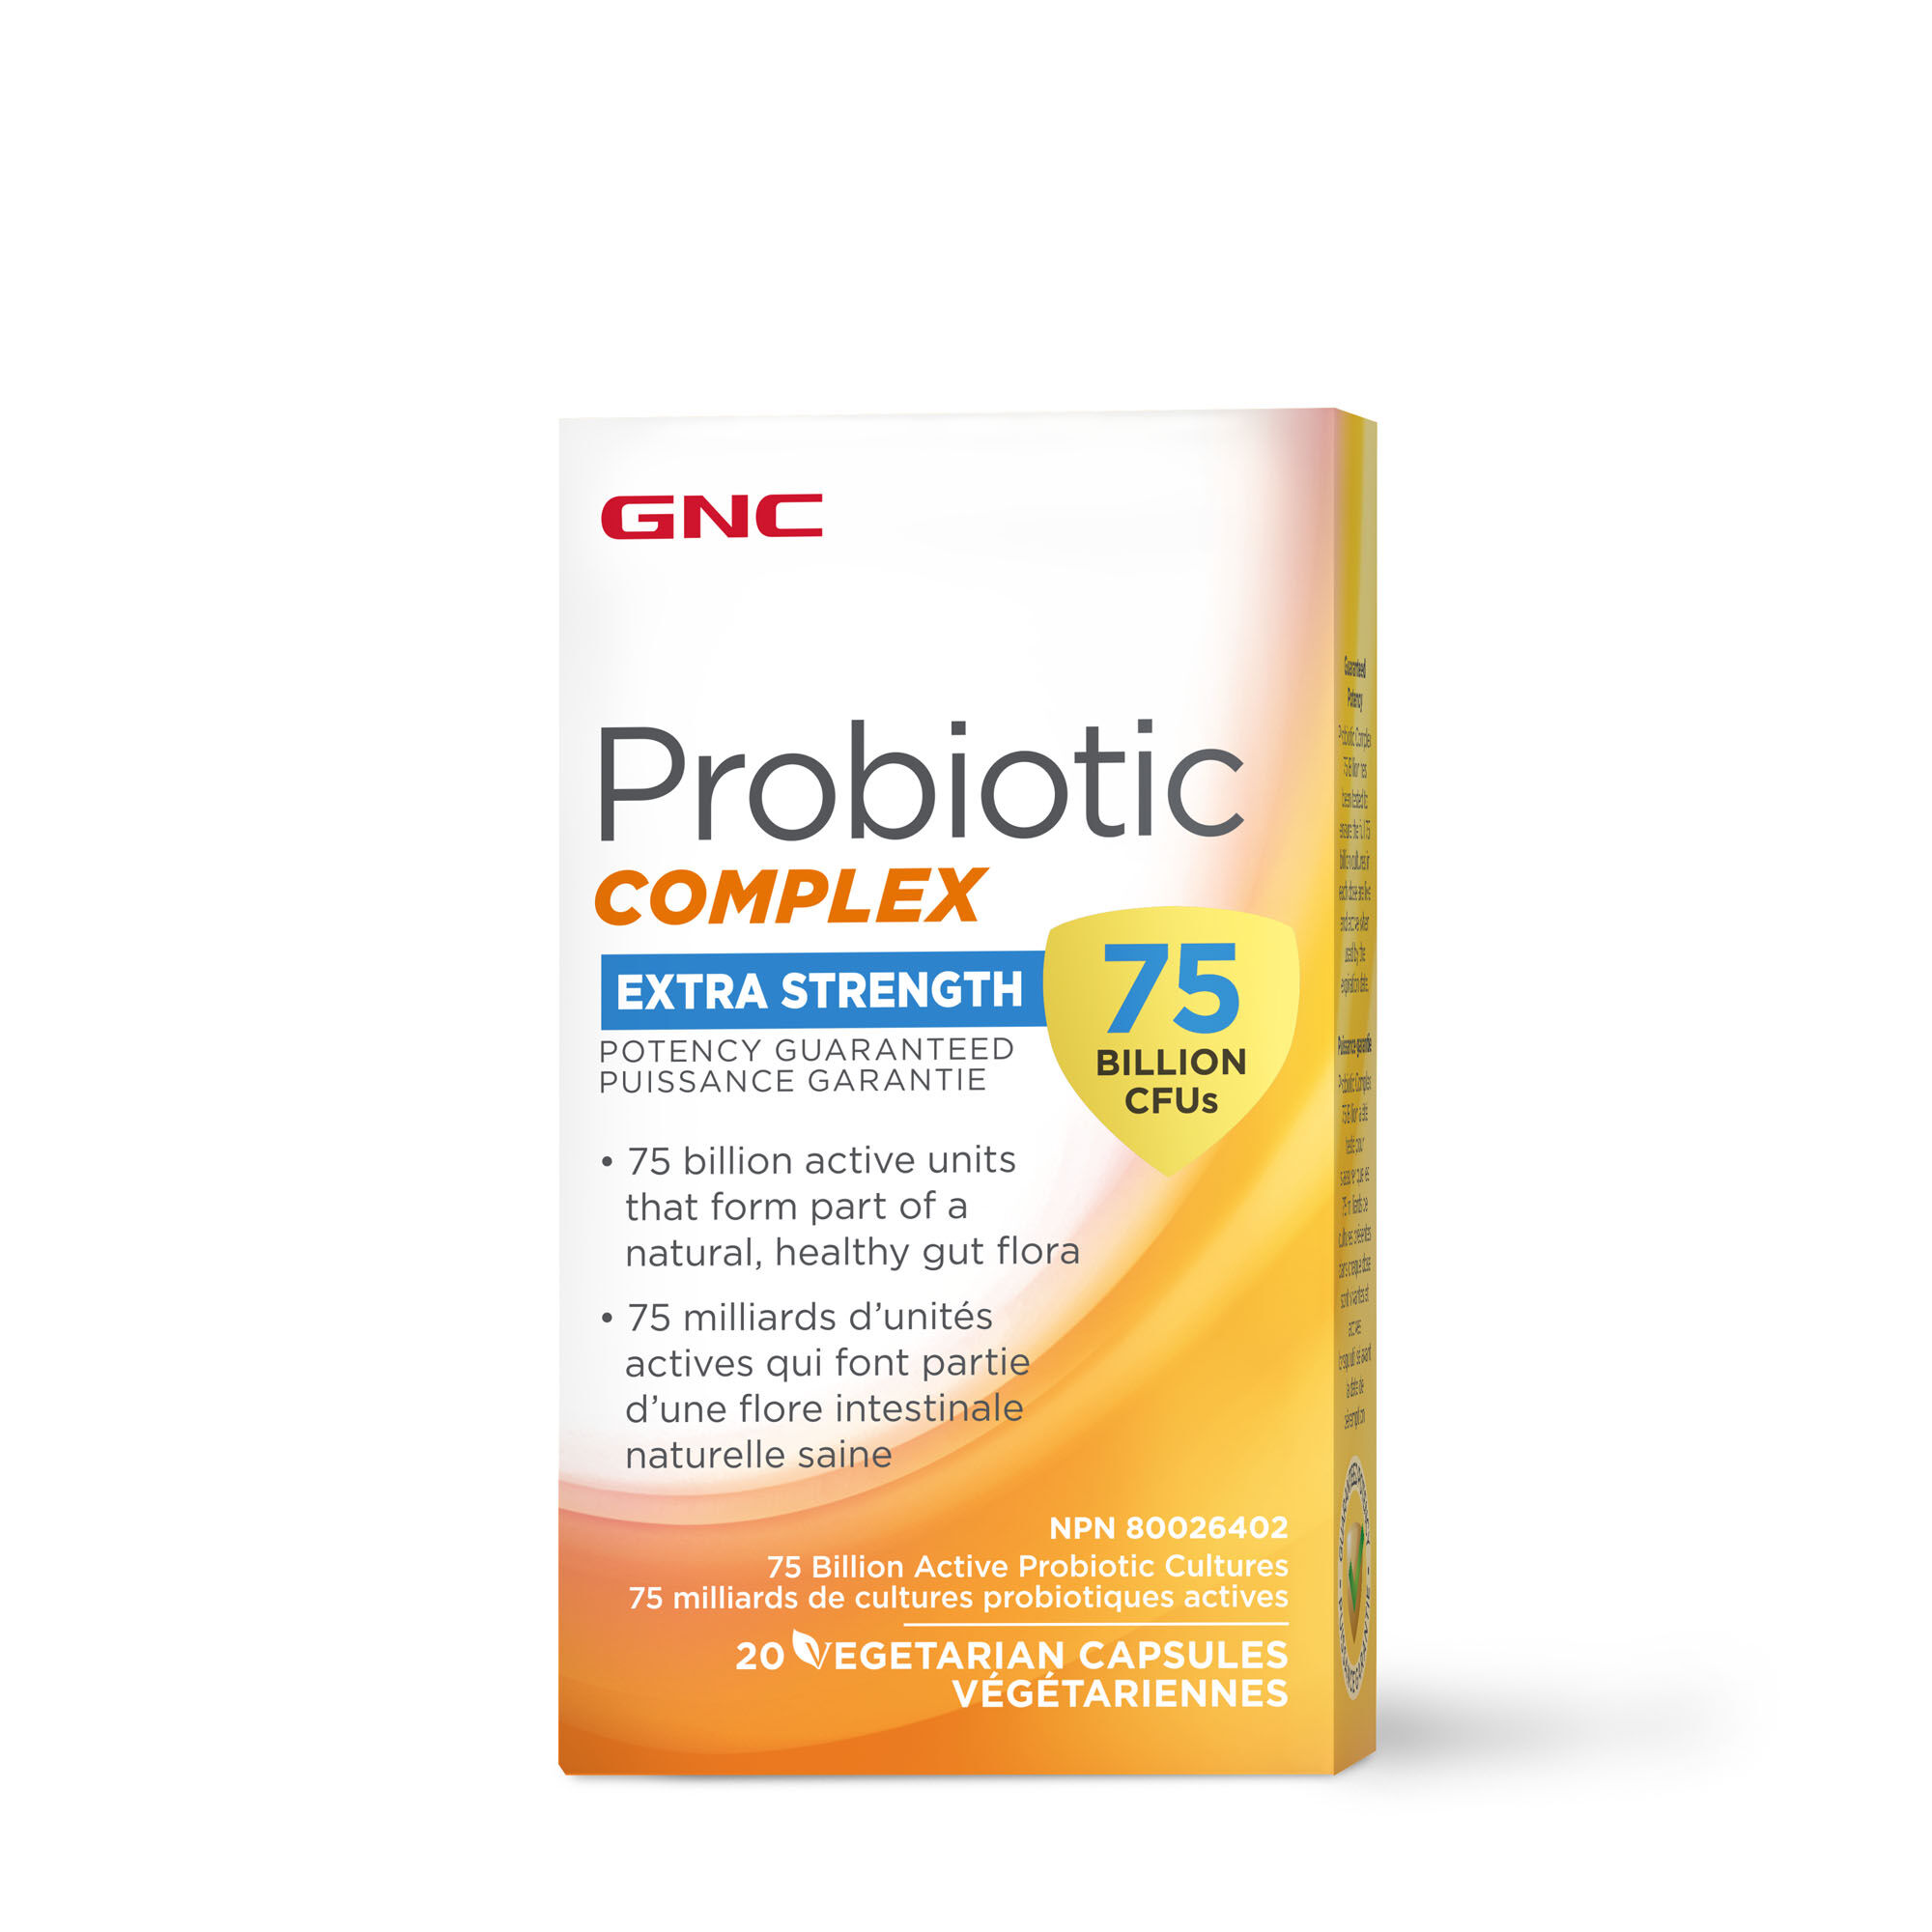 GNC Probiotic COMPLEX EXTRA STRENGTH